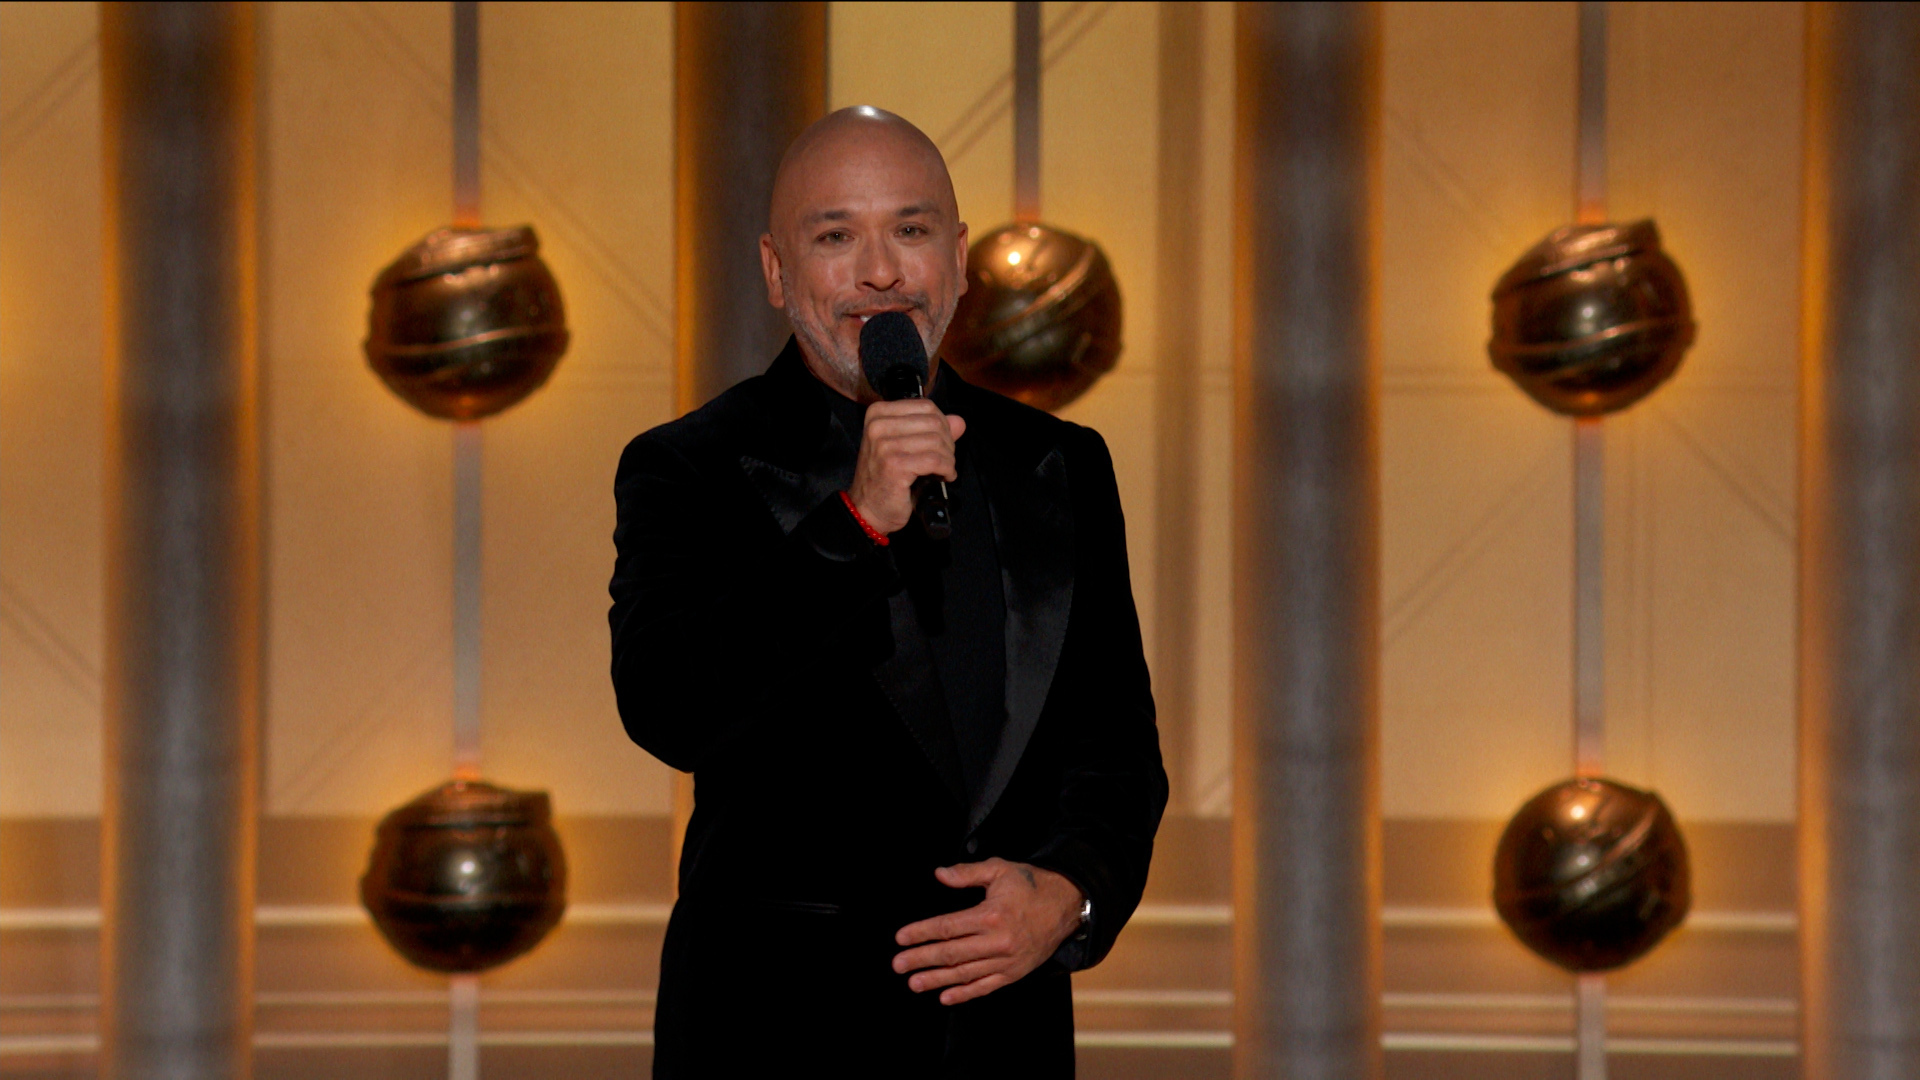 Watch Golden Globe Awards® Jo Koy Golden Globes Monologue Full show